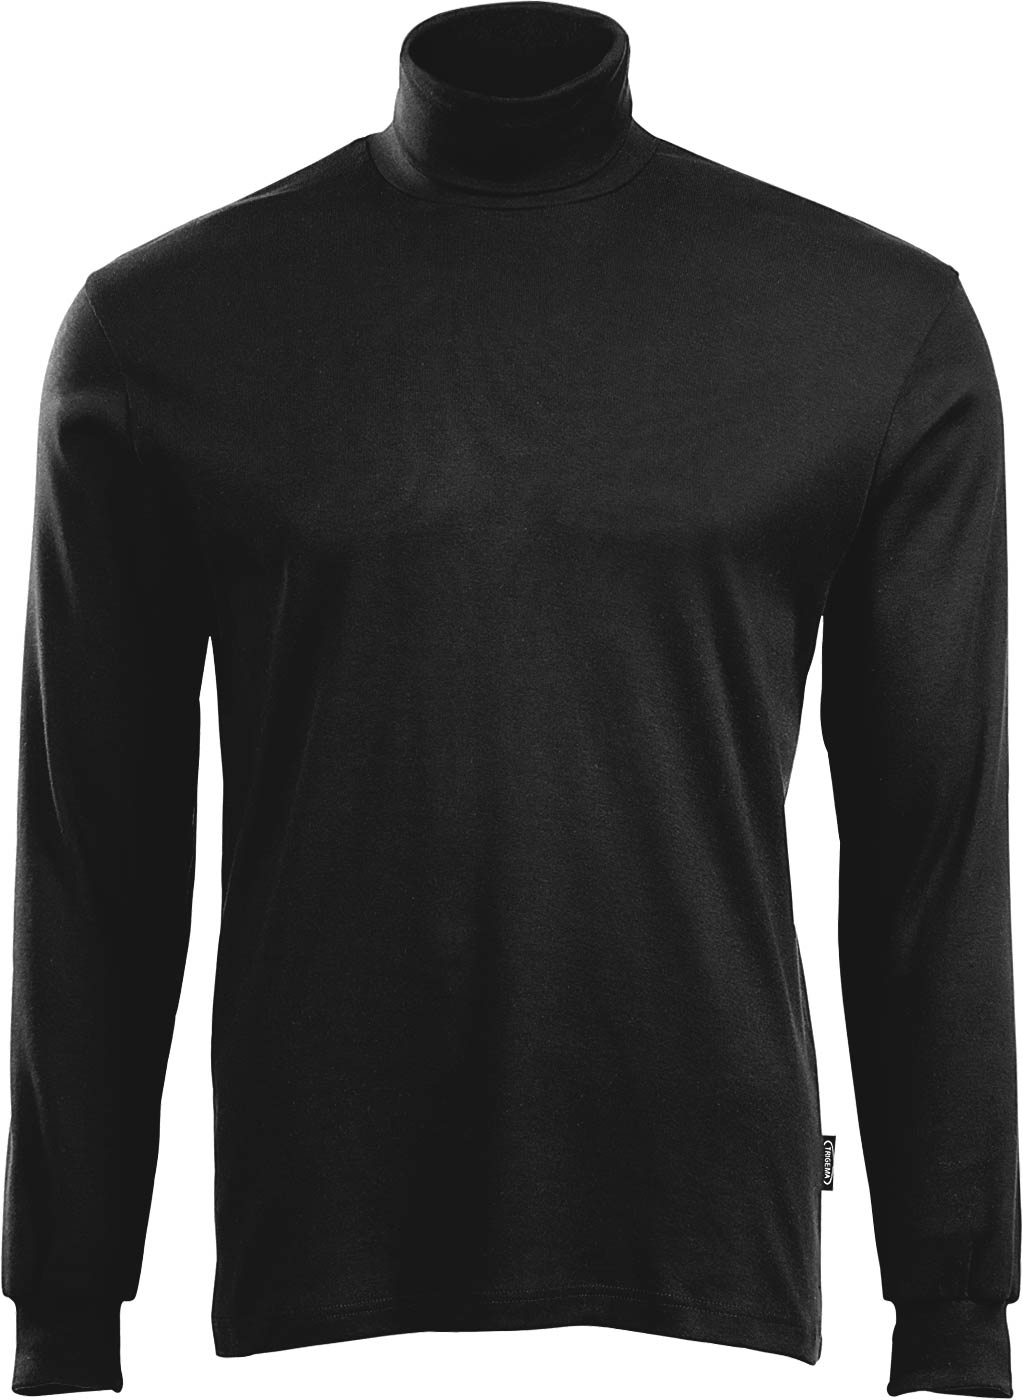 Rollkragen Langarm-Shirt in schwarz - 100% Baumwolle Trigema